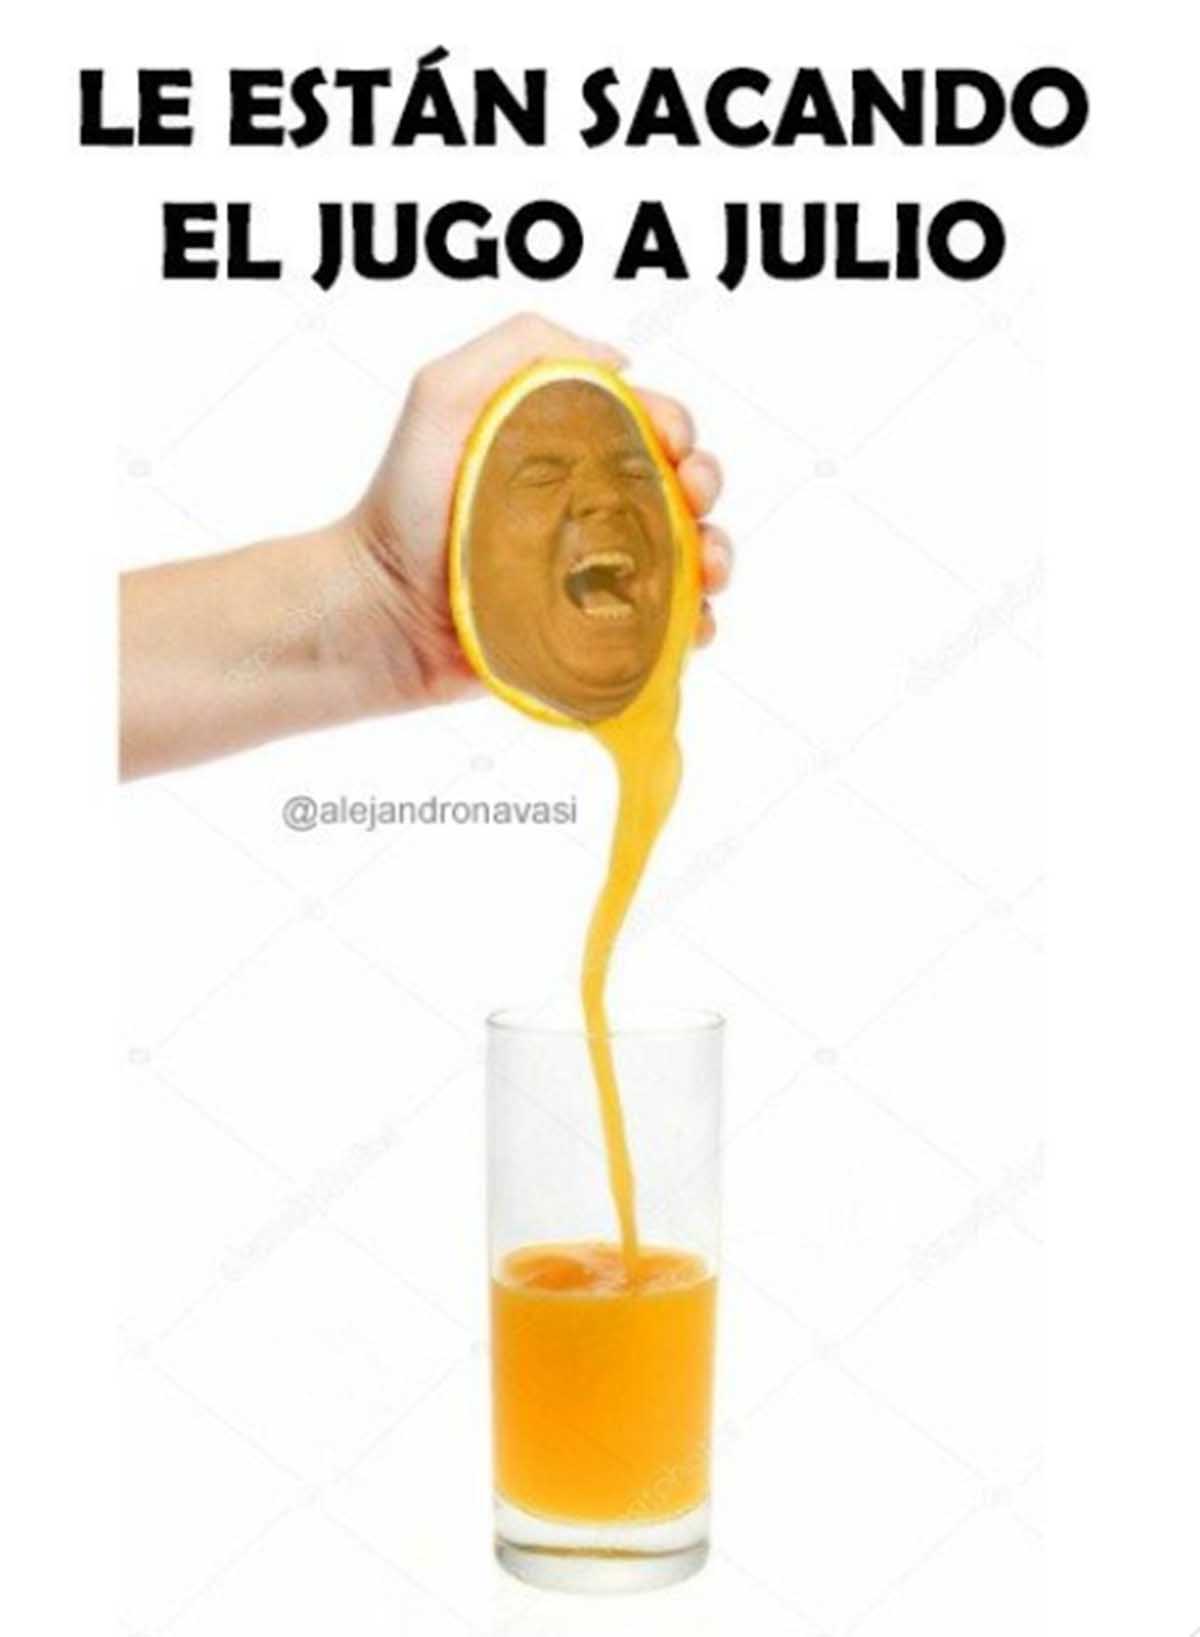 Julio Iglesias